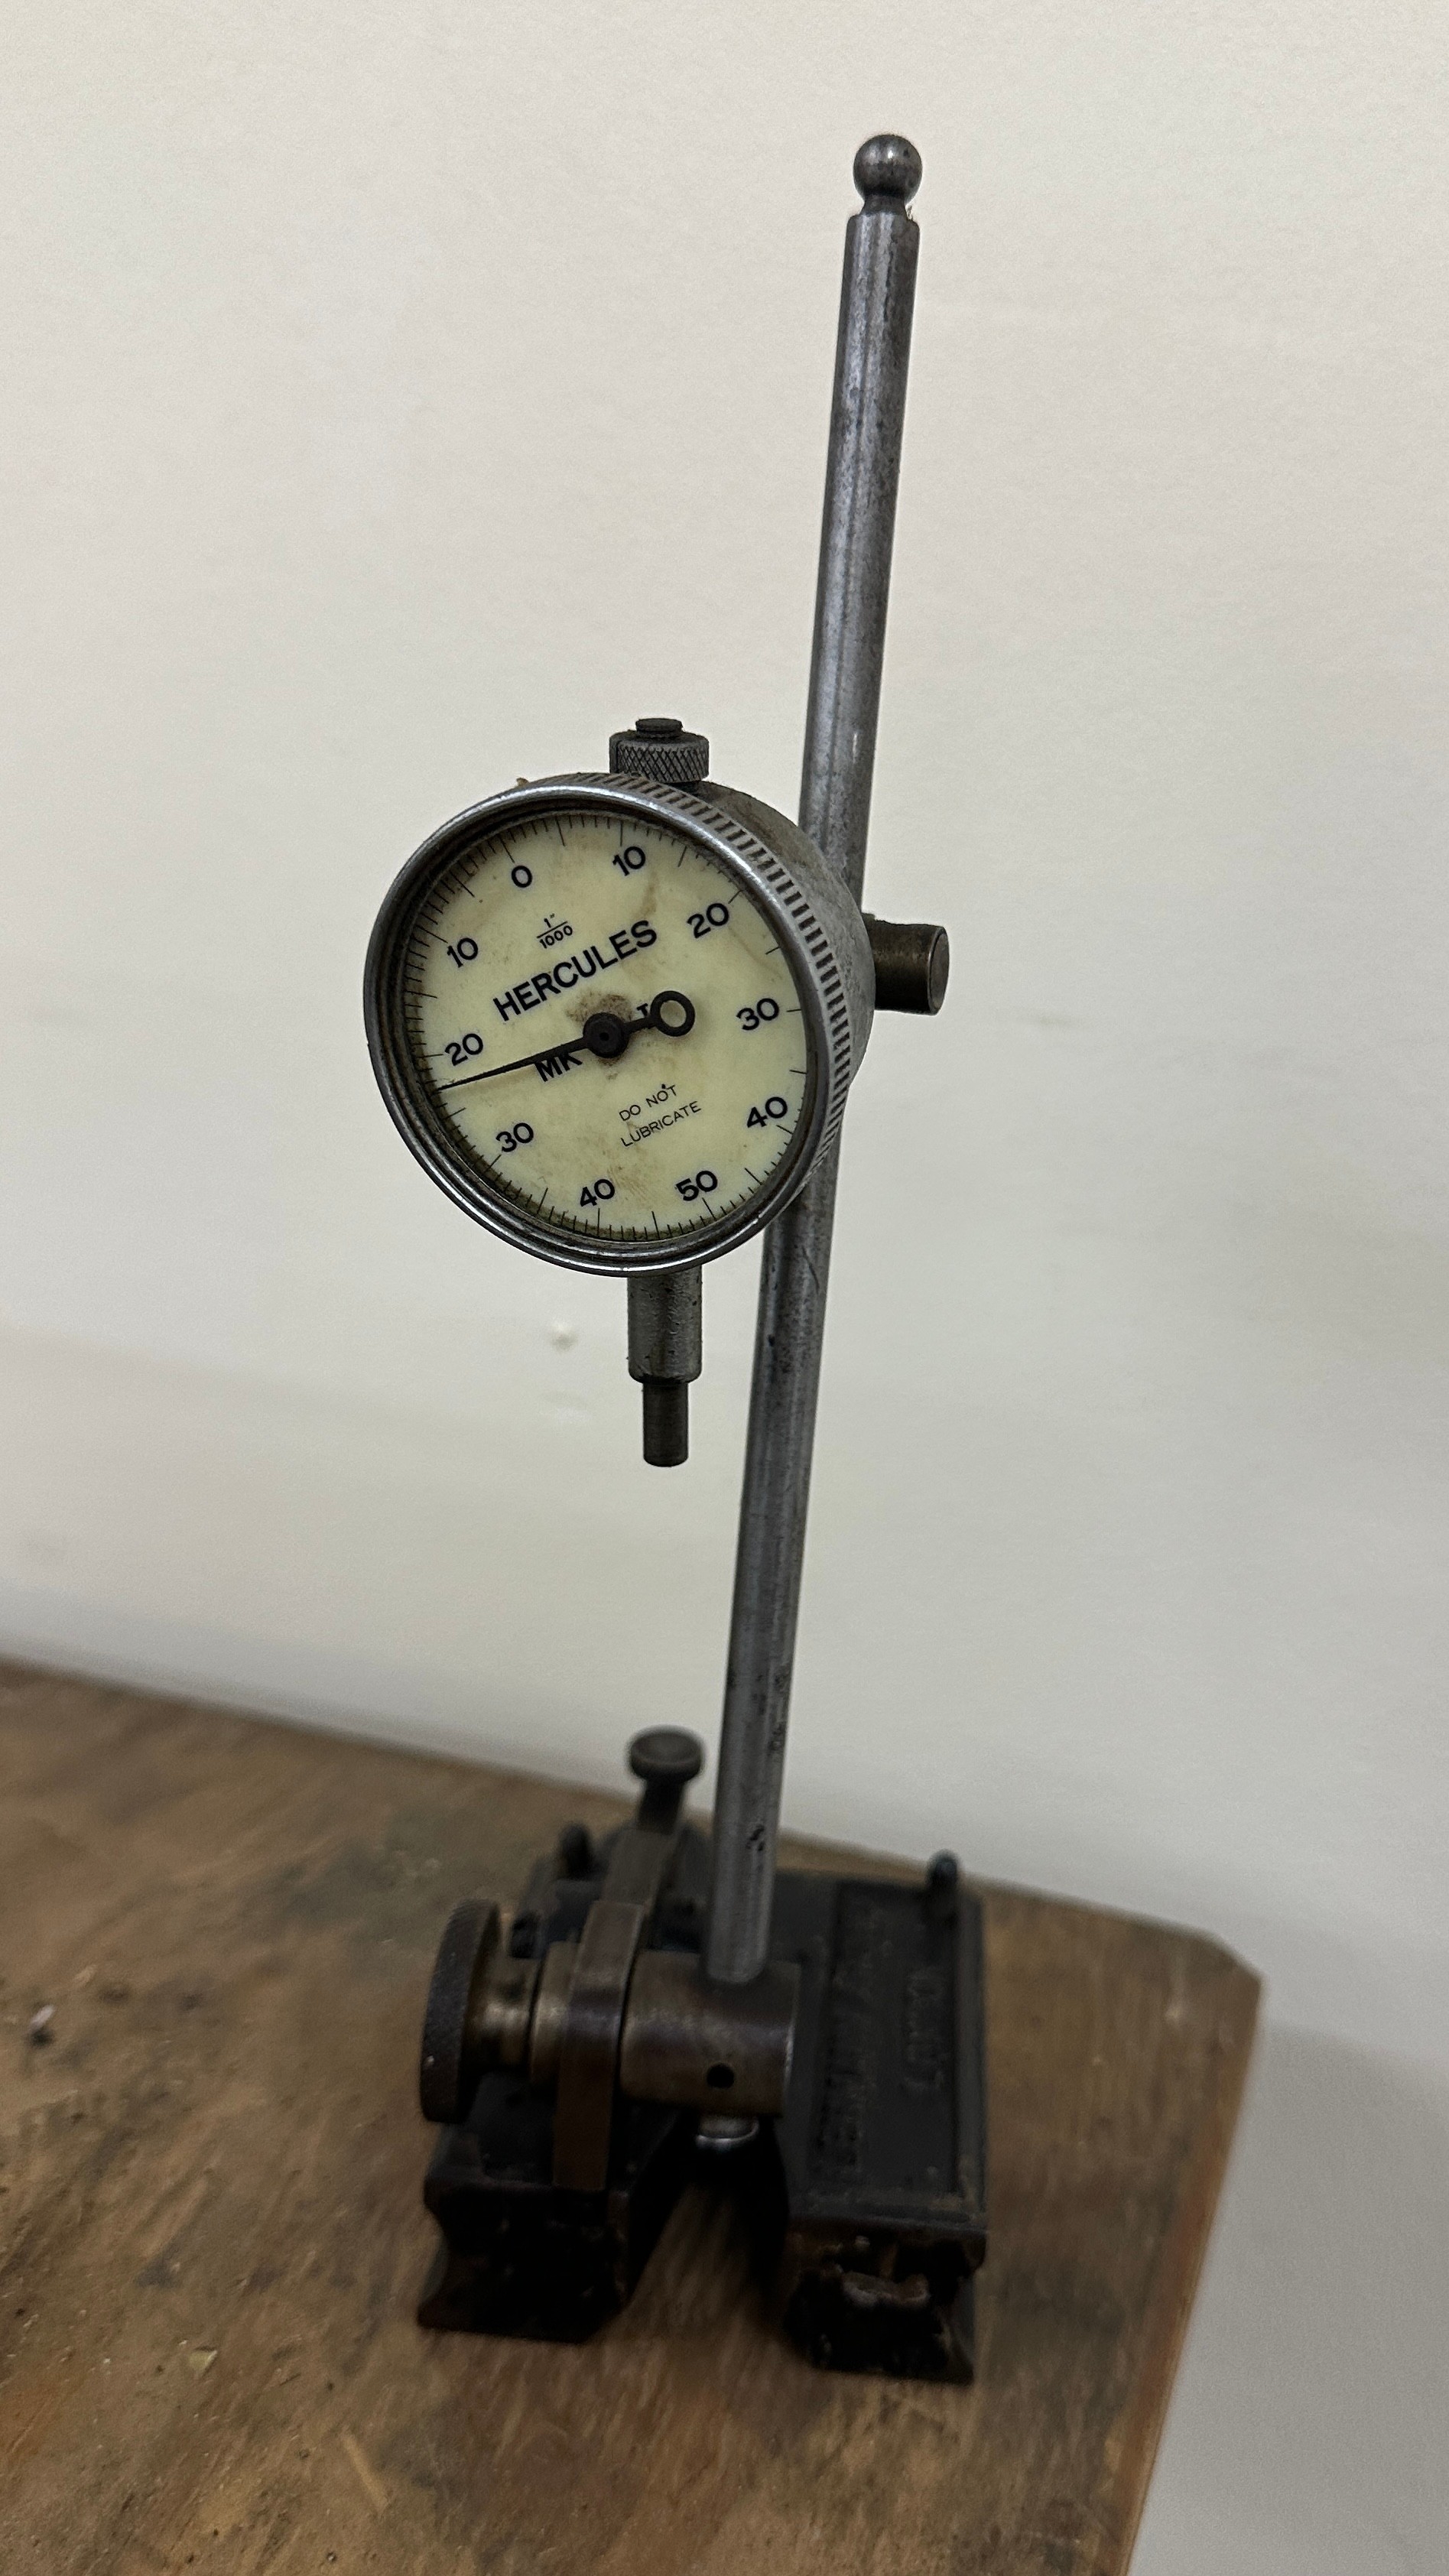 Engineer hercules dial gauge